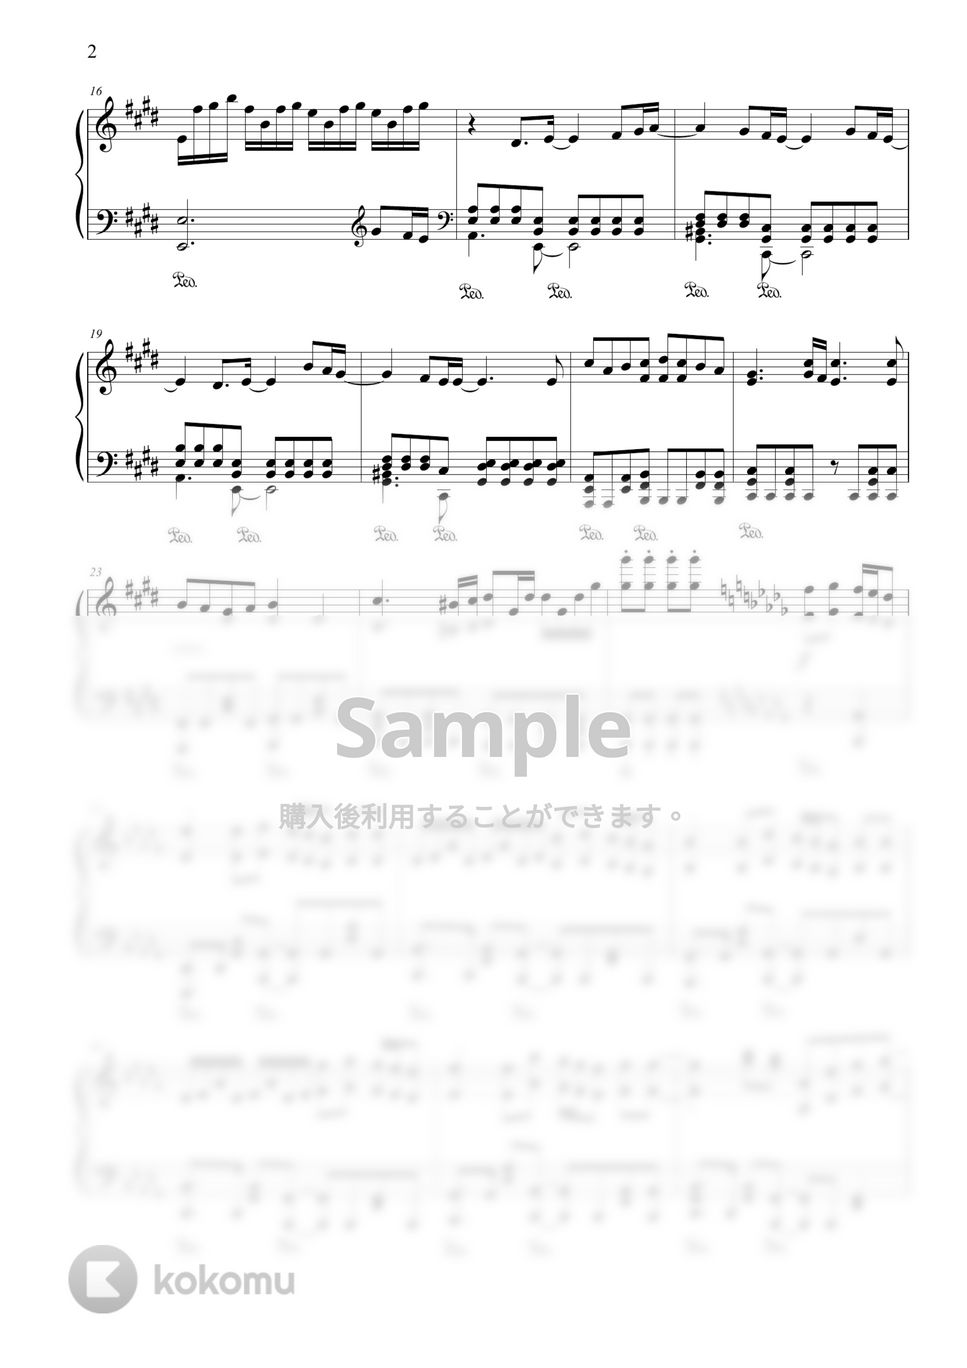 嵐×米津玄師 - カイト (NHK2020ソング) by CANACANA family